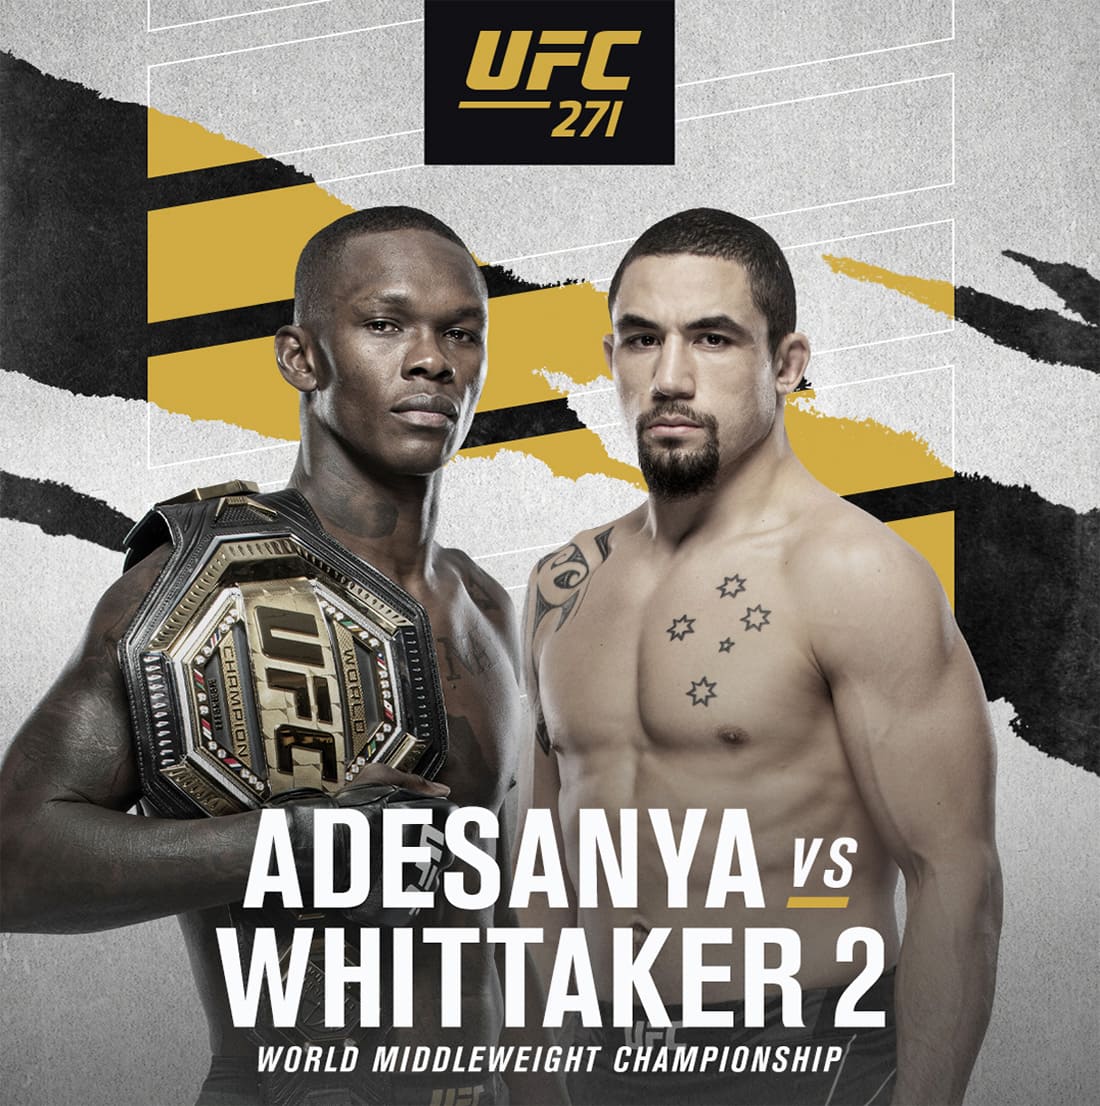 UFC 271: Адесанья - Уиттакер 2 дата проведения, кард, участники и результаты